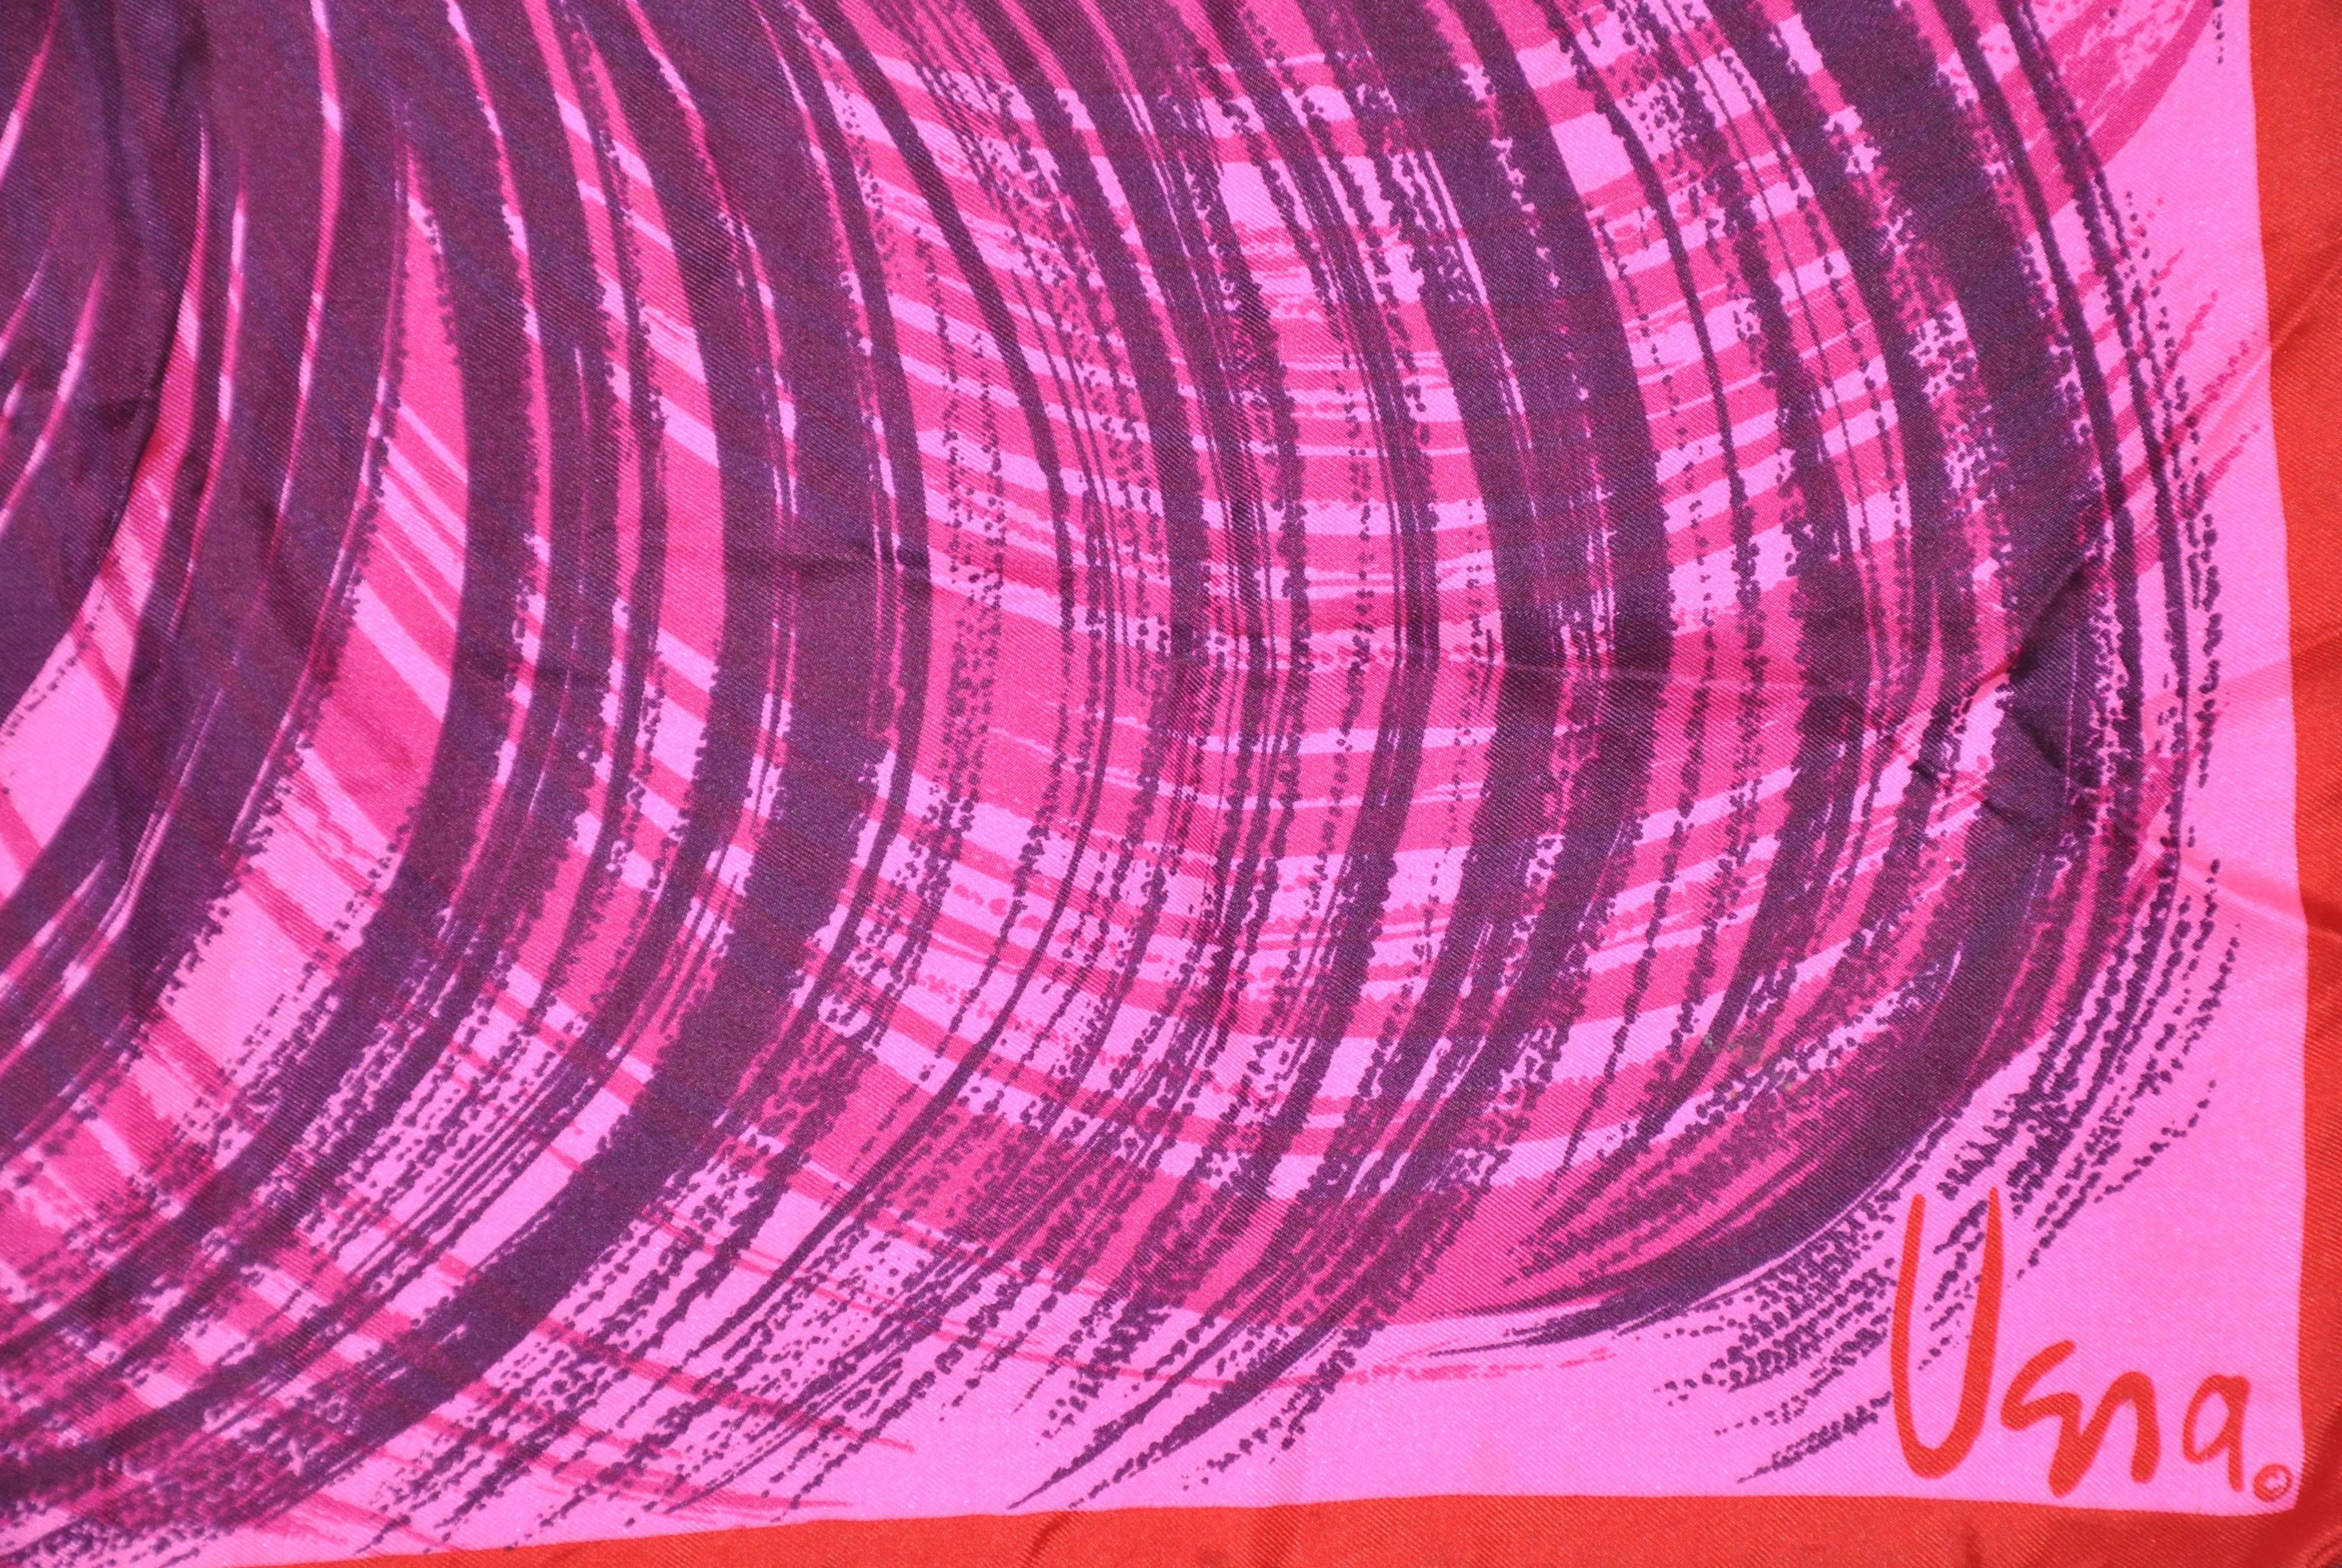        Vera wunderbar kühn und lebendige Multi-Farben von tiefen Veilchen, fuchsia, rosa und rot und akzentuiert mit handgerollten violetten Kanten, misst 22 1/2 Zoll von 23 Zoll. Hergestellt in Japan.